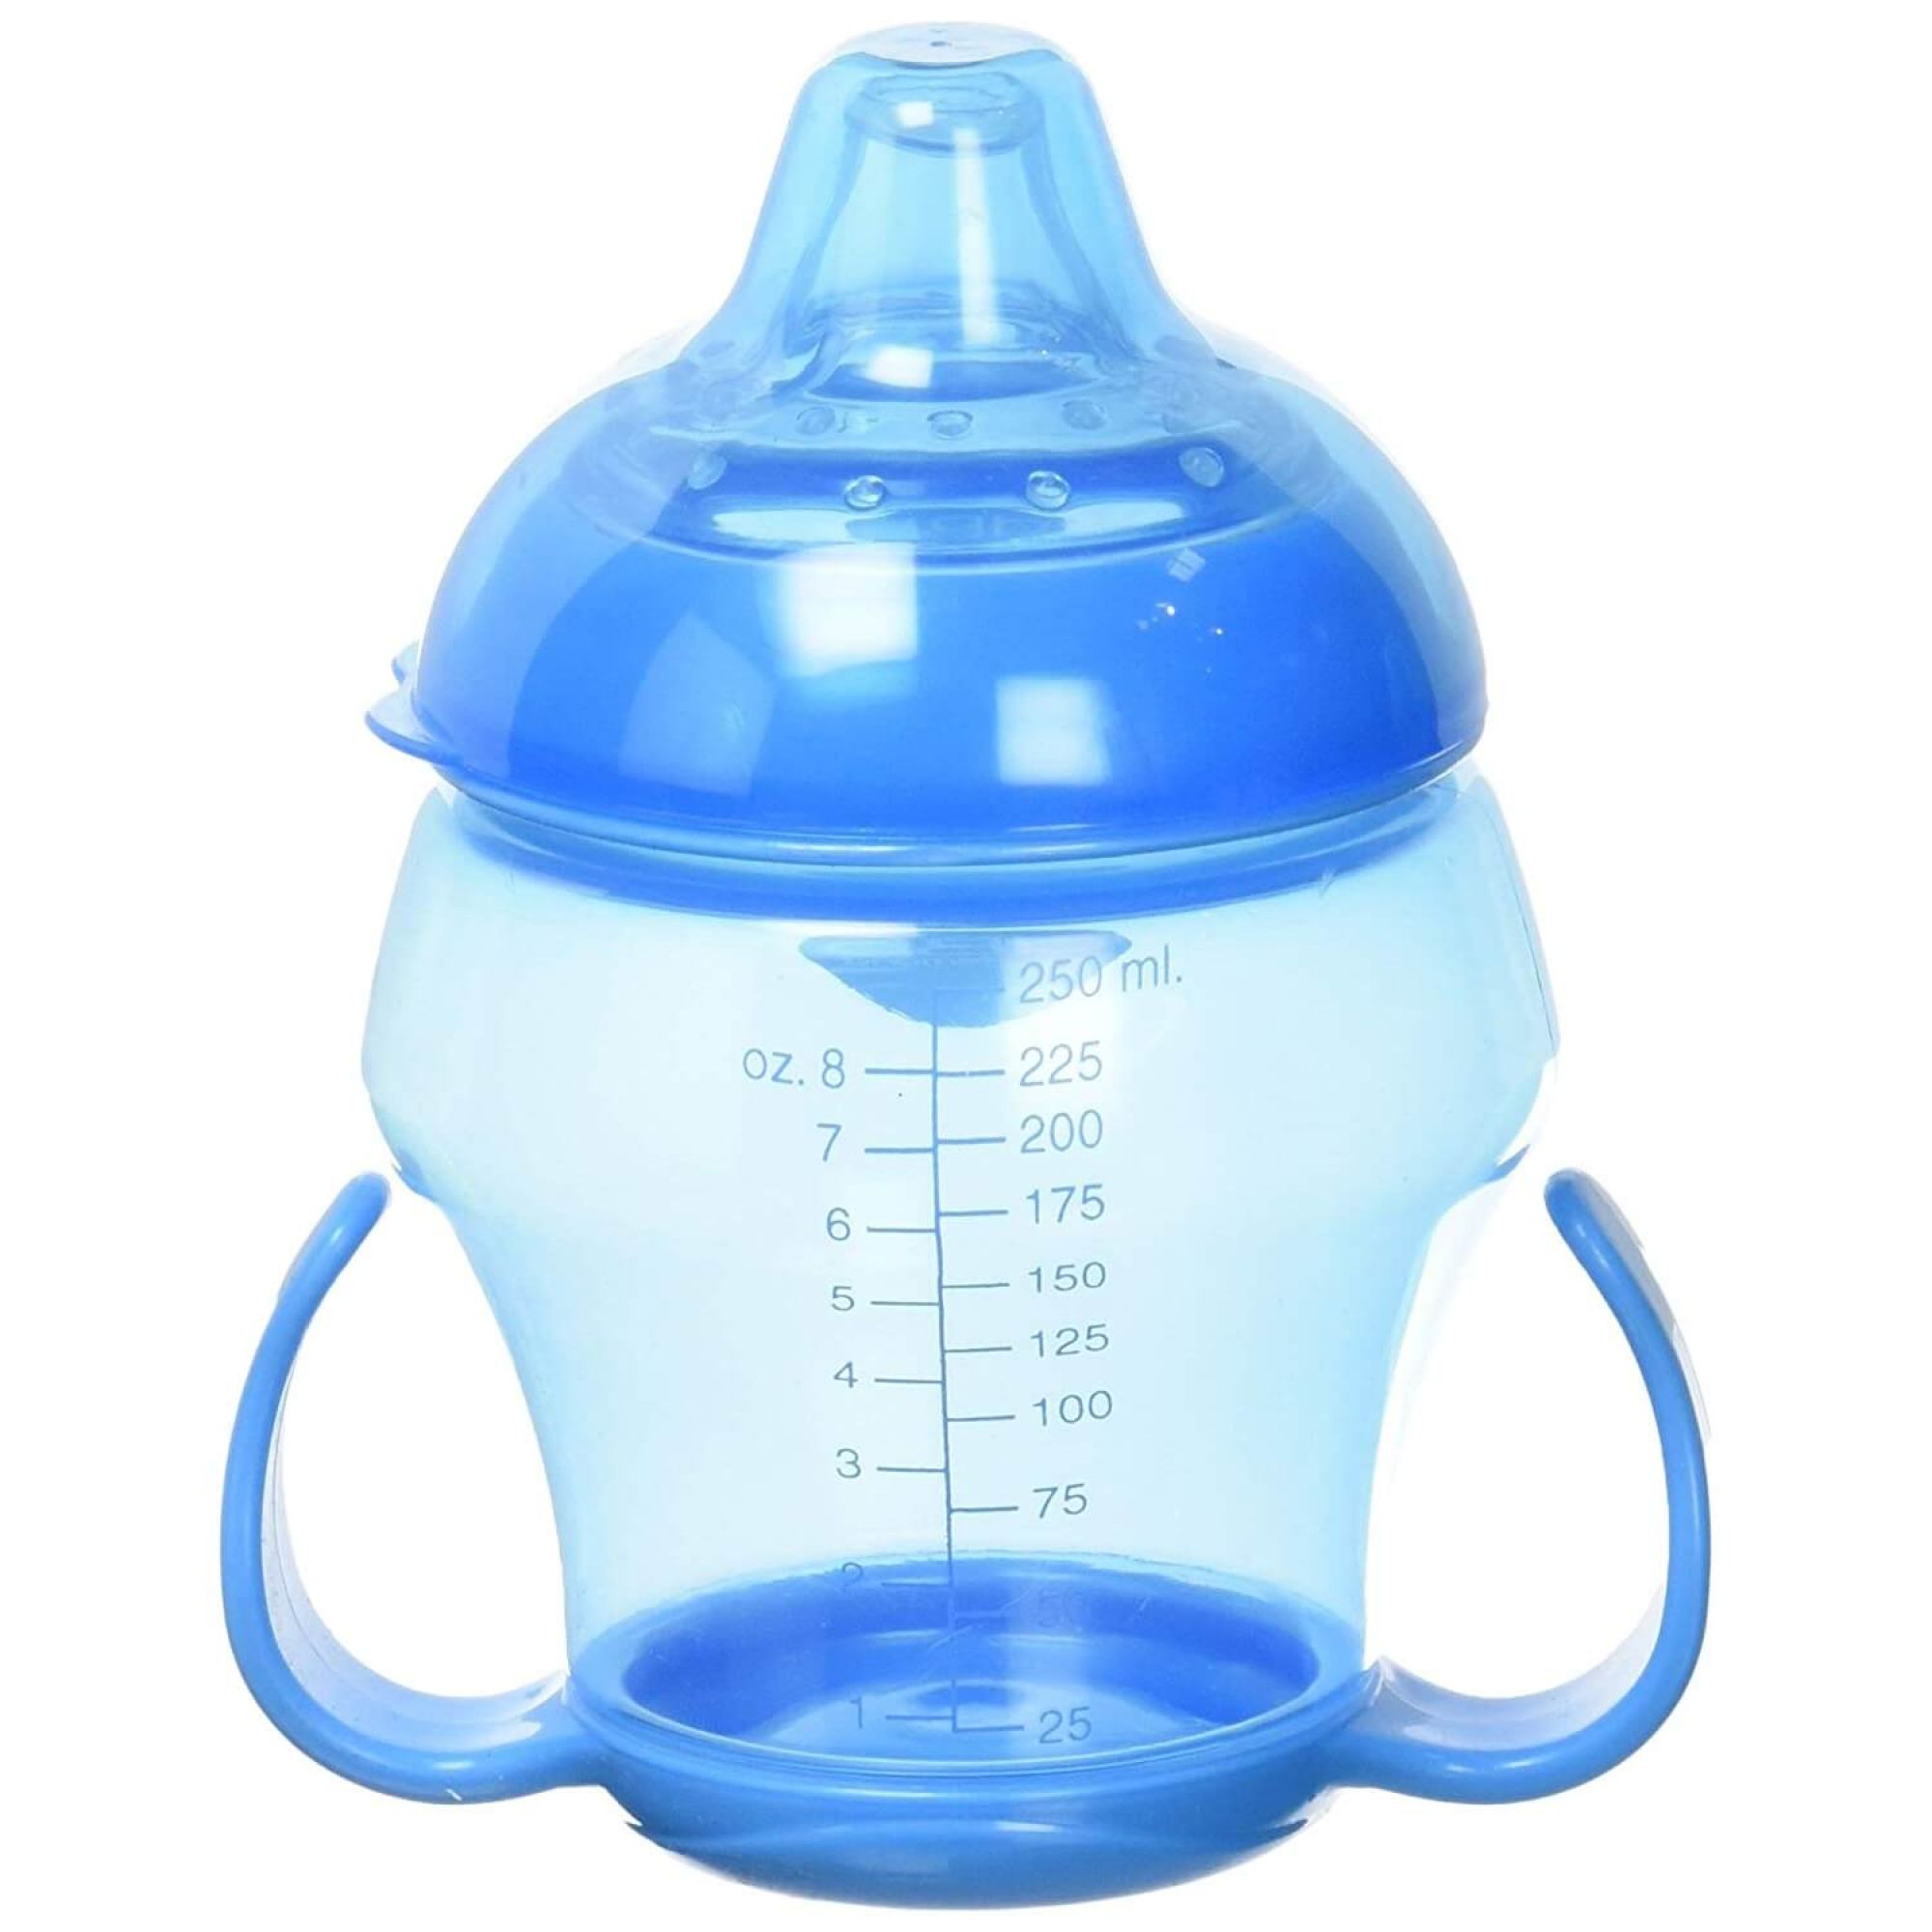 DBB REMOND Babytasse - Tasse d'Apprentissage pour Bébé - 250 ml, Bleu  Translucide